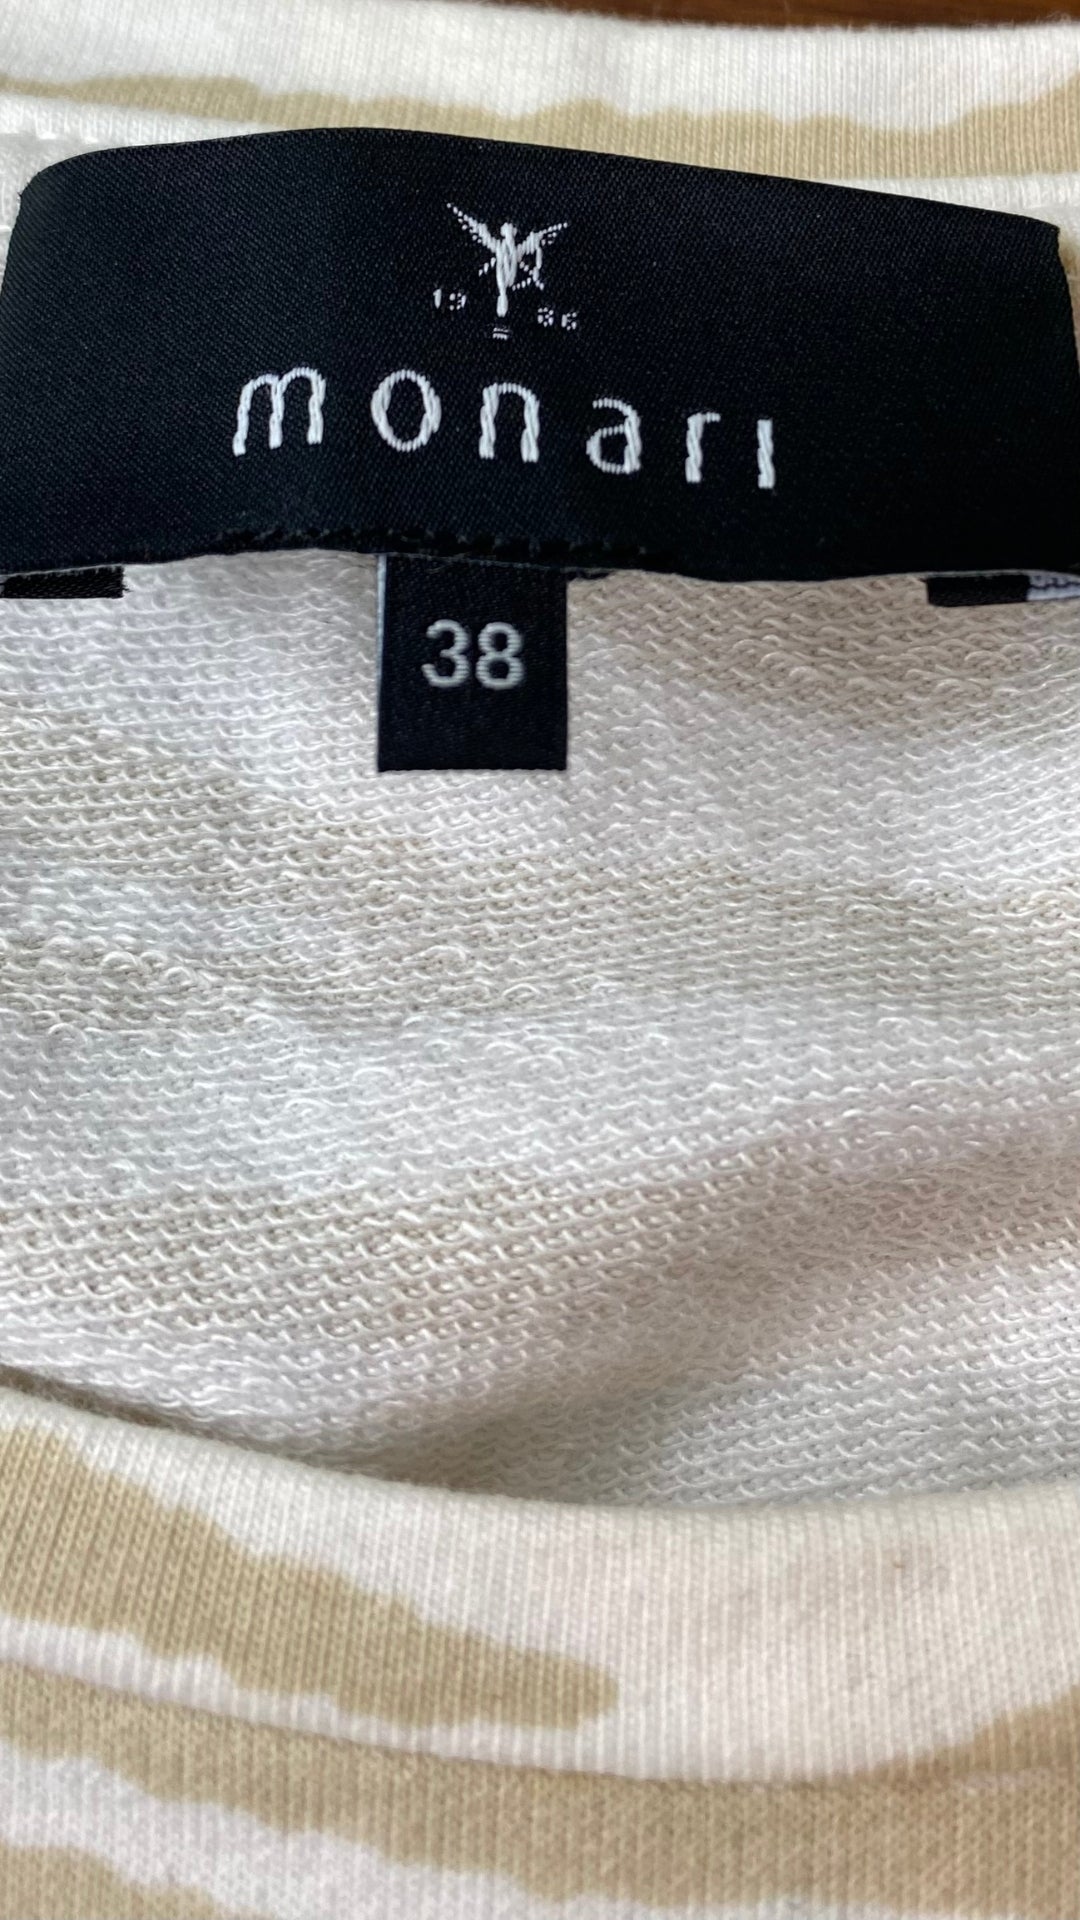 Chandail zébrures sable en french terry Monari, taille 38 (8/medium). Vue de l'étiquette de marque et taille.